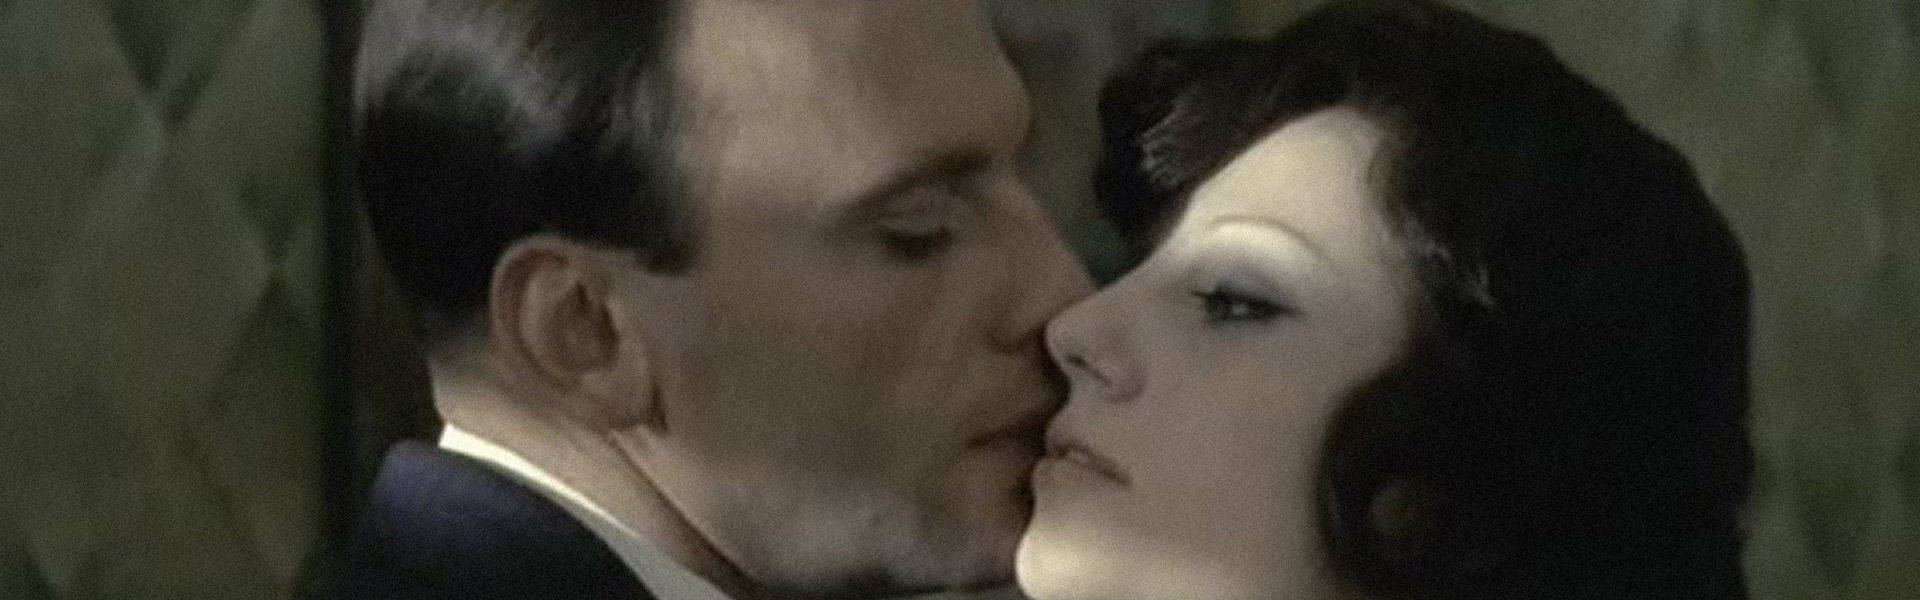 ז'אן לואי טרינטיניאן (בתפקיד מרצ'לו קלריצ'י) וסטפניה סנדרלי (בתפקיד ג'וליה קלריצ'י) בסרט ''הקונפורמיסט'', 1970 / צילום: ויקיפדיה